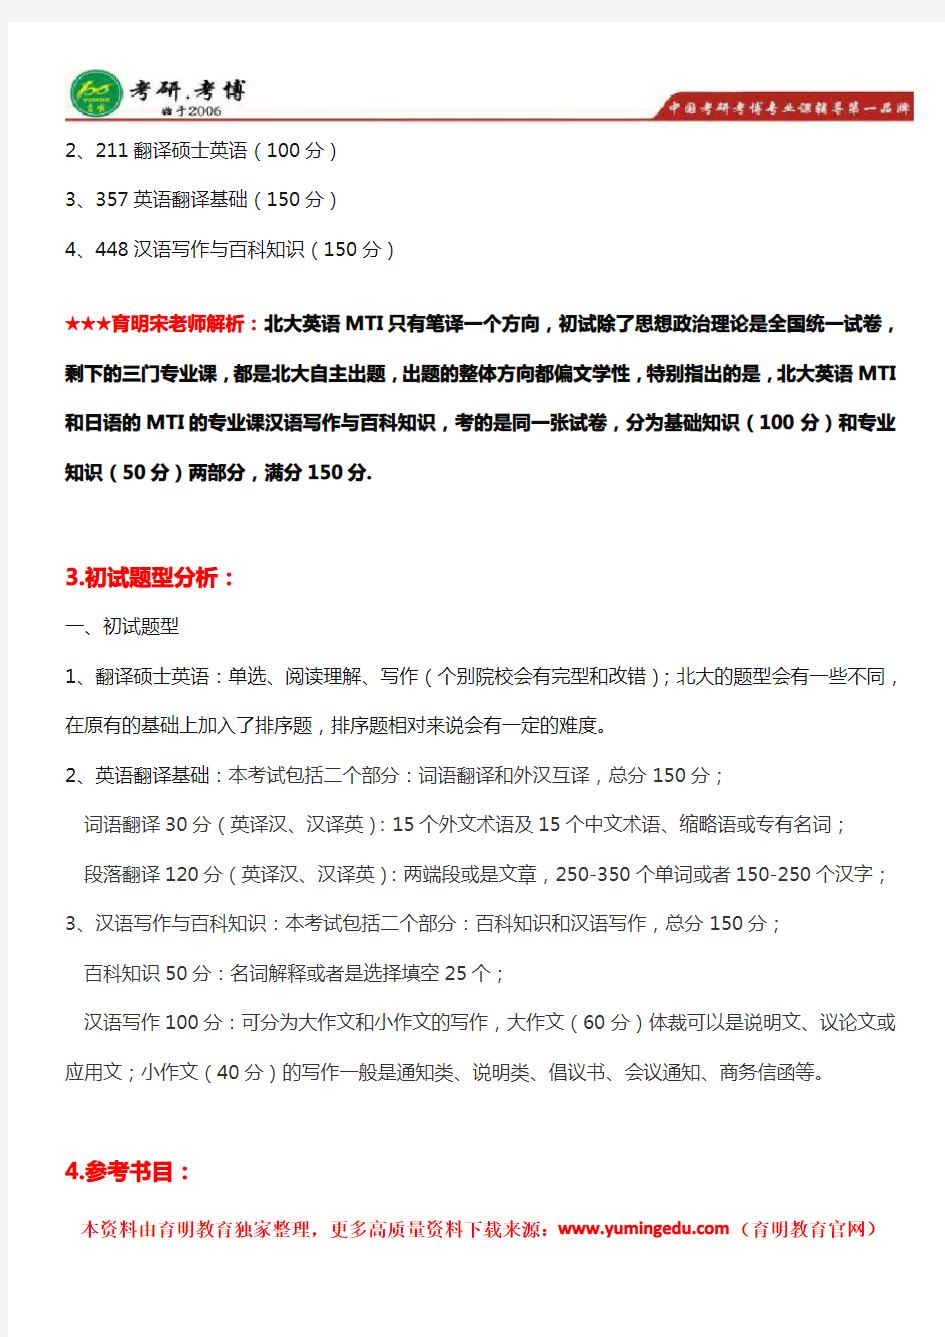 2018年北京大学(北大)翻硕英语(英语笔译)考研真题、报录比、录取名单